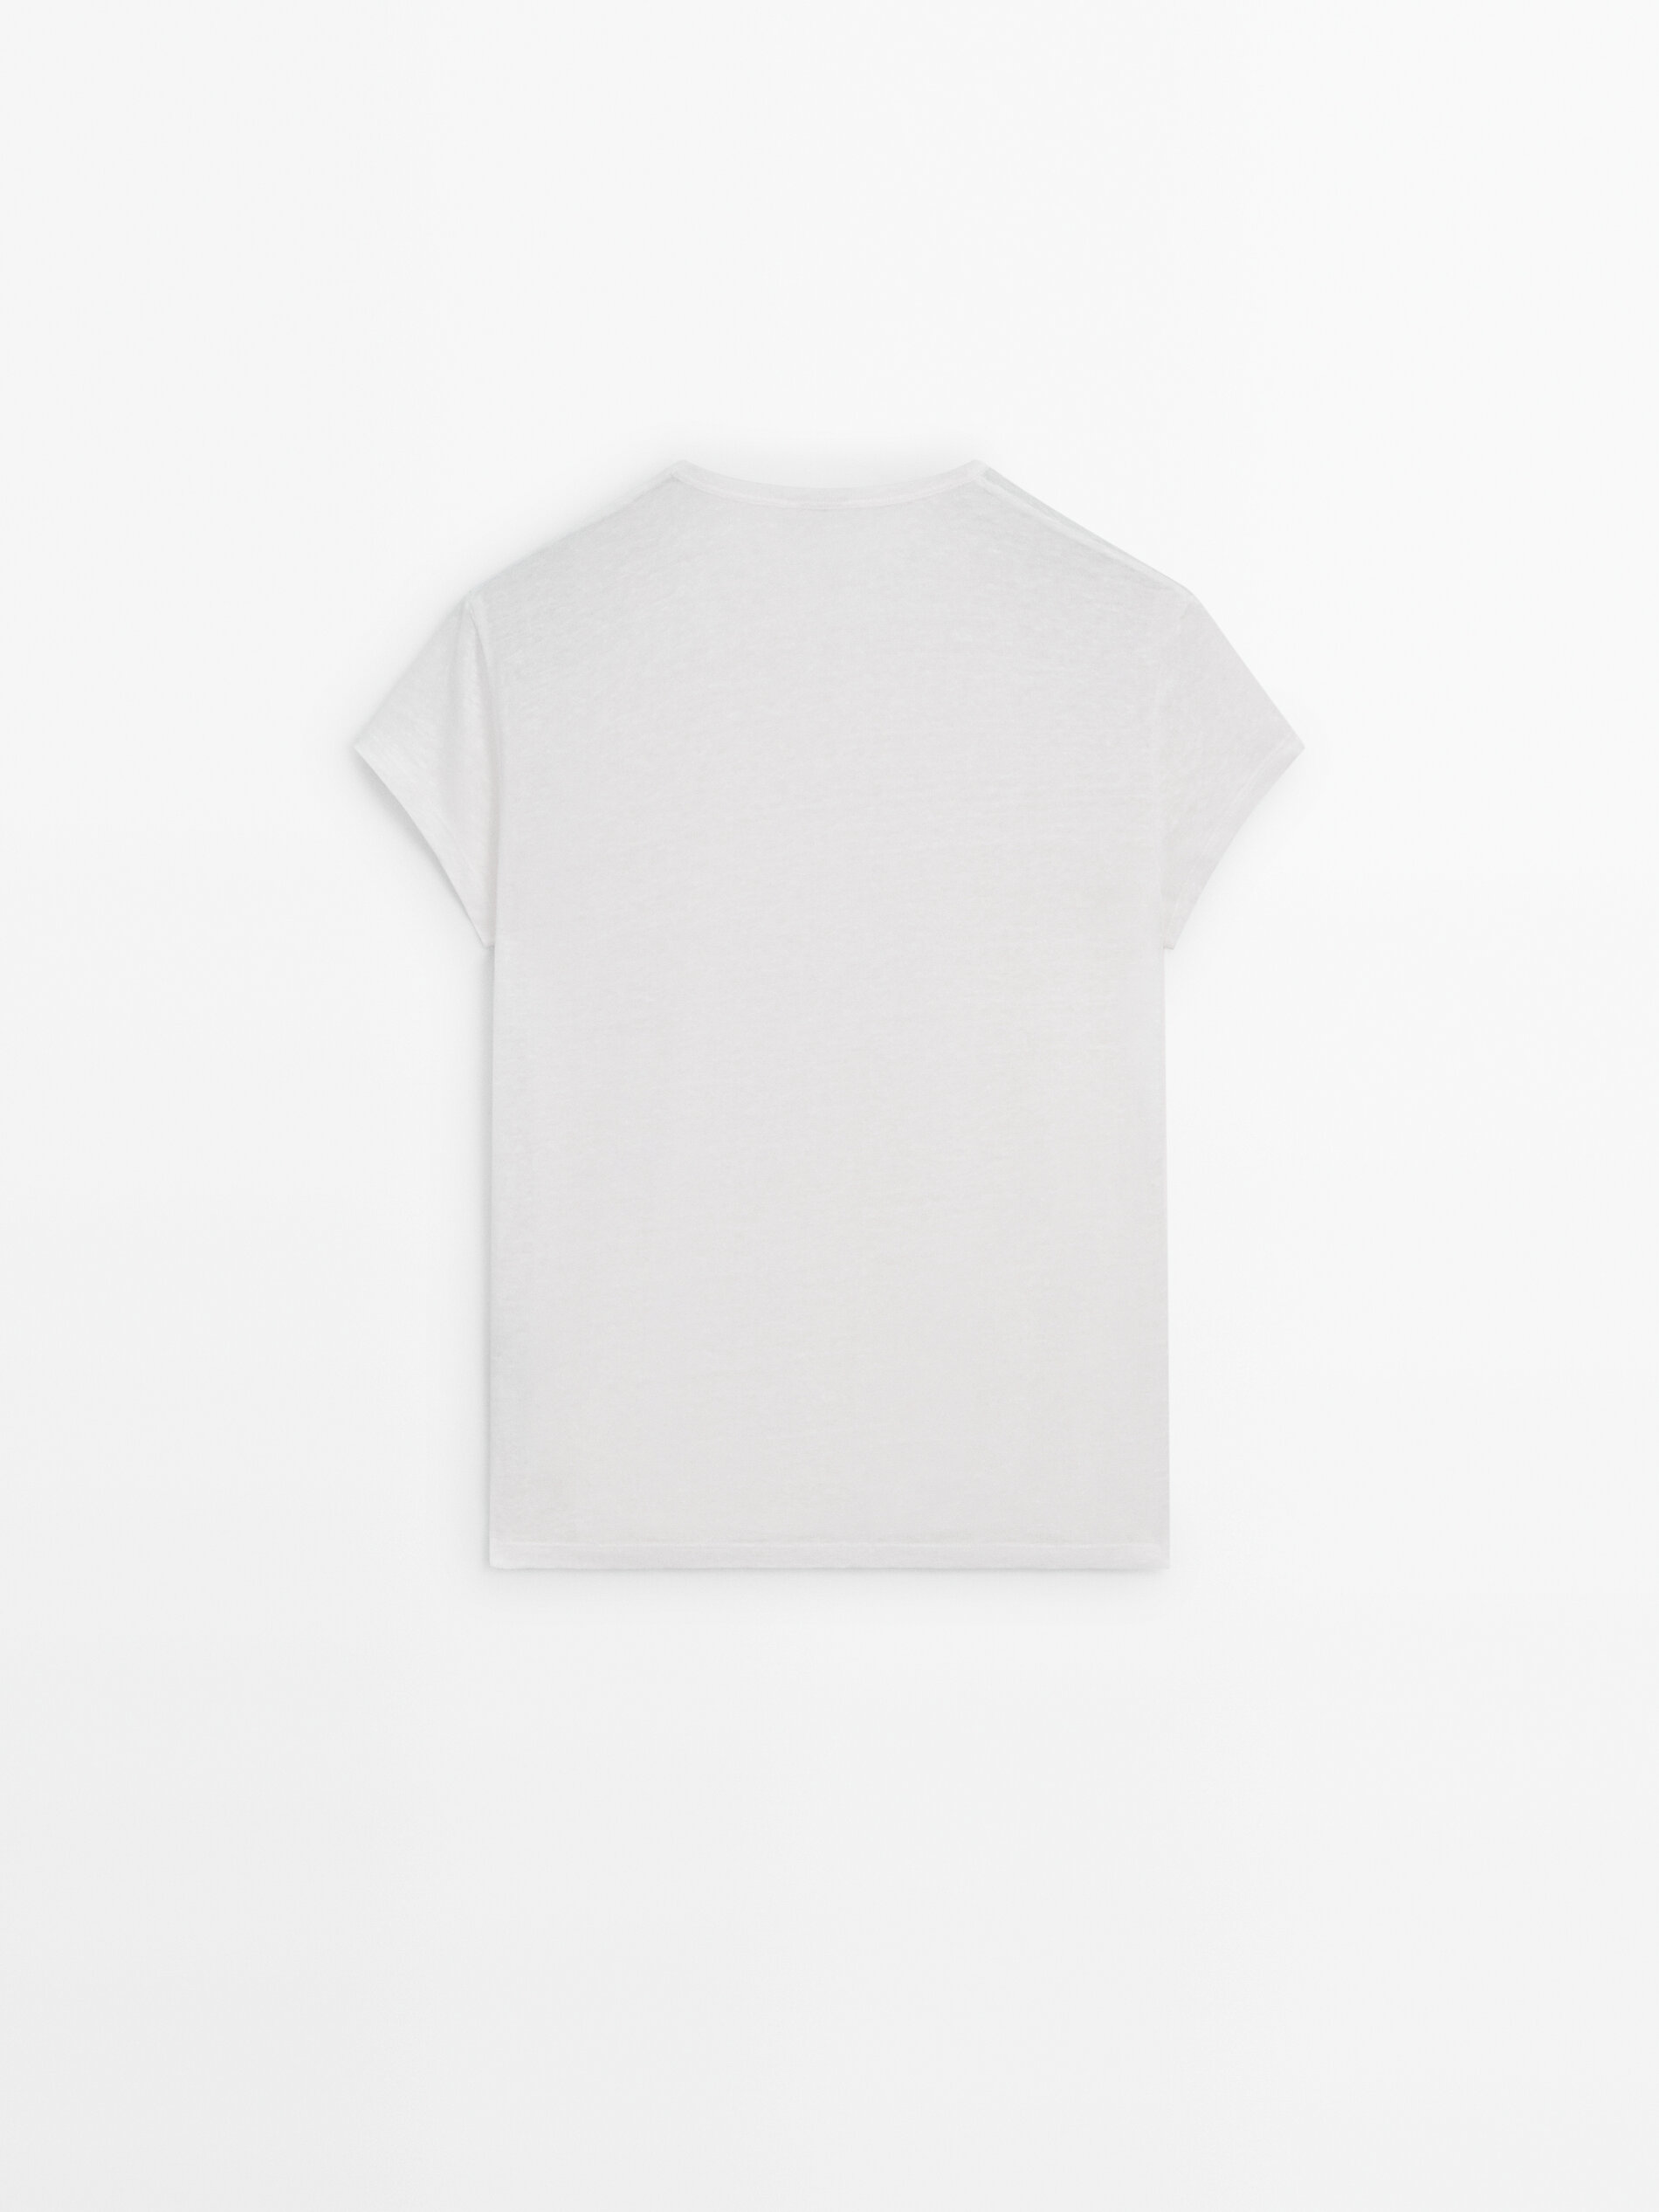 Camiseta manga corta 100% lino